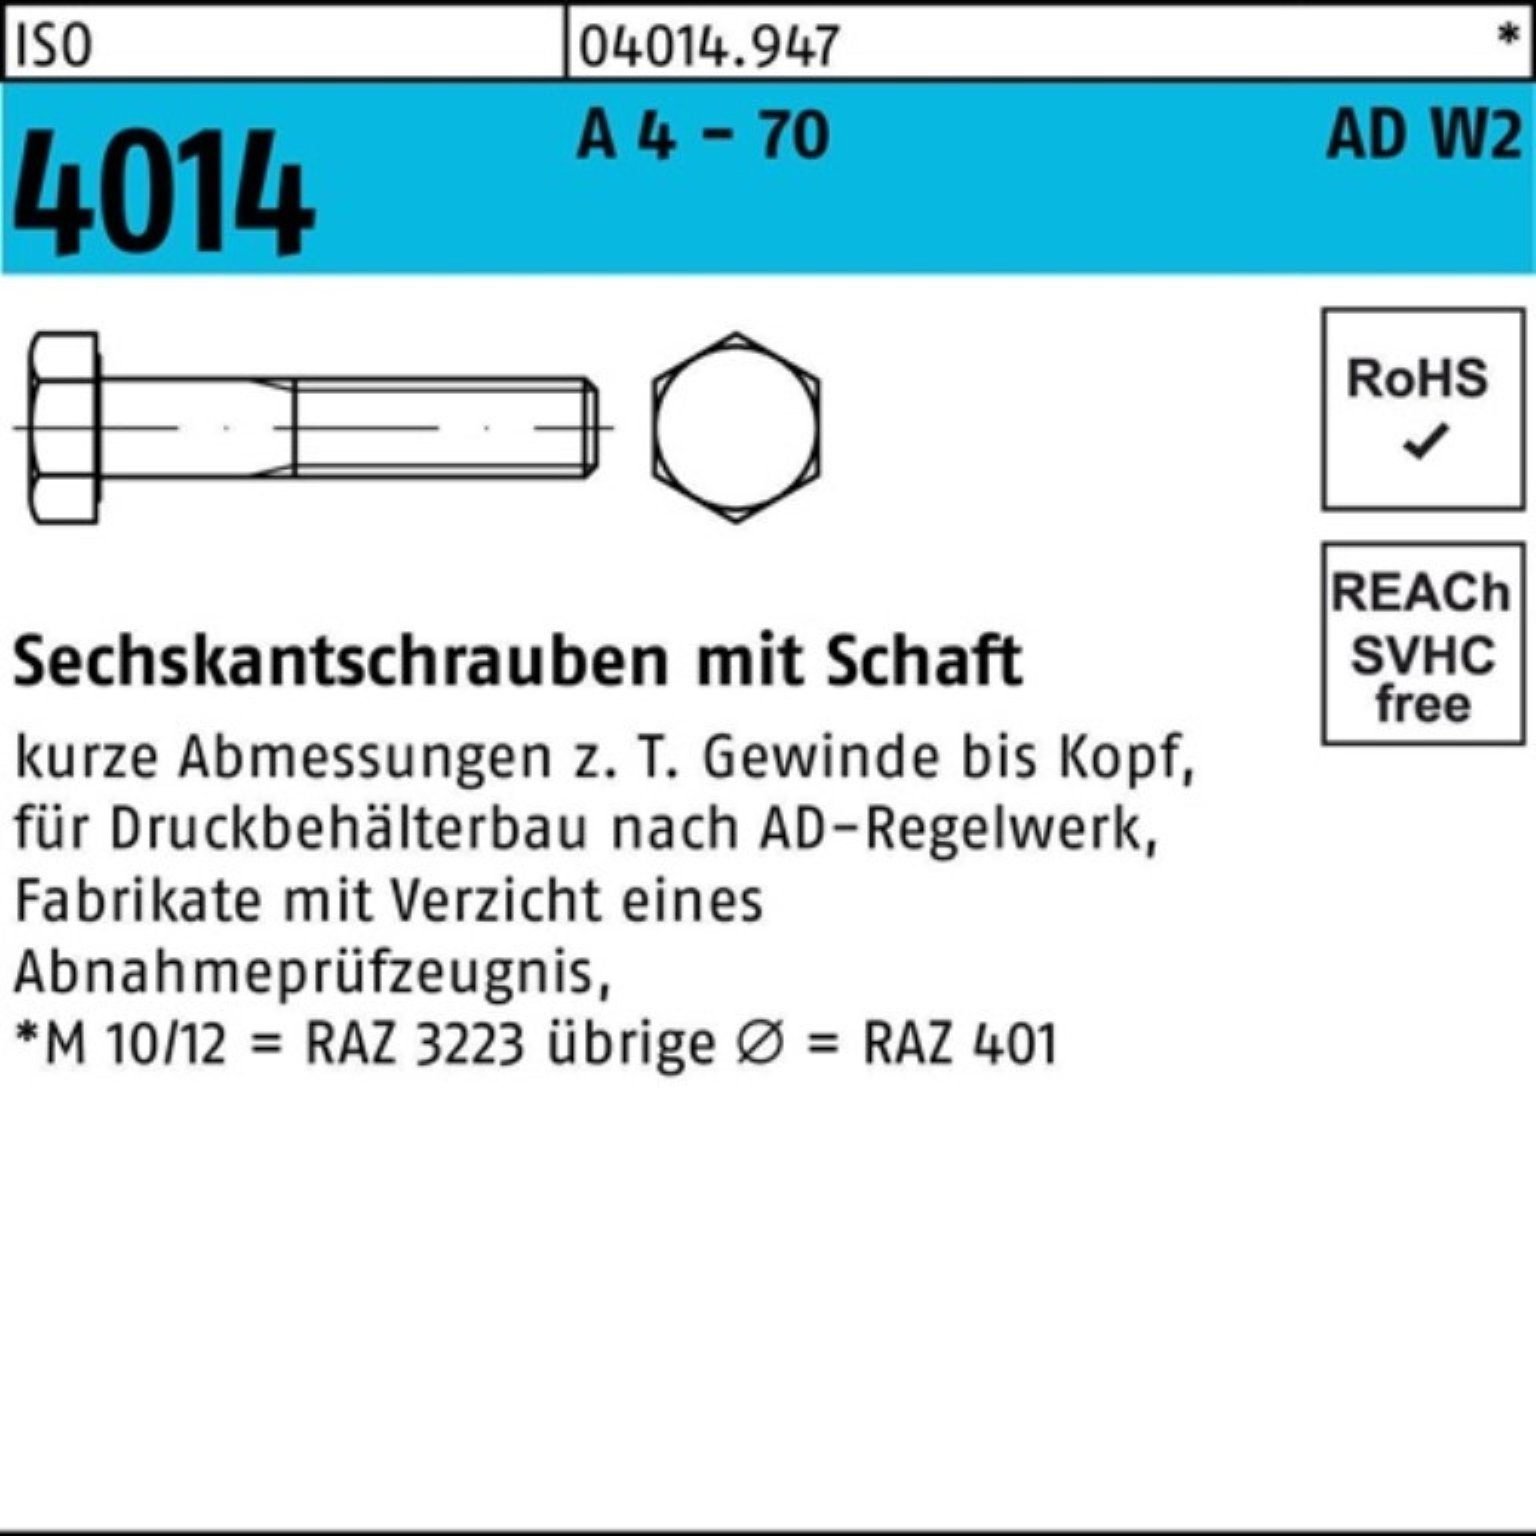 Bufab Sechskantschraube 100er Pack Sechskantschraube ISO 4014 Schaft M10x 50 A 4 - 70 AD-W2 10